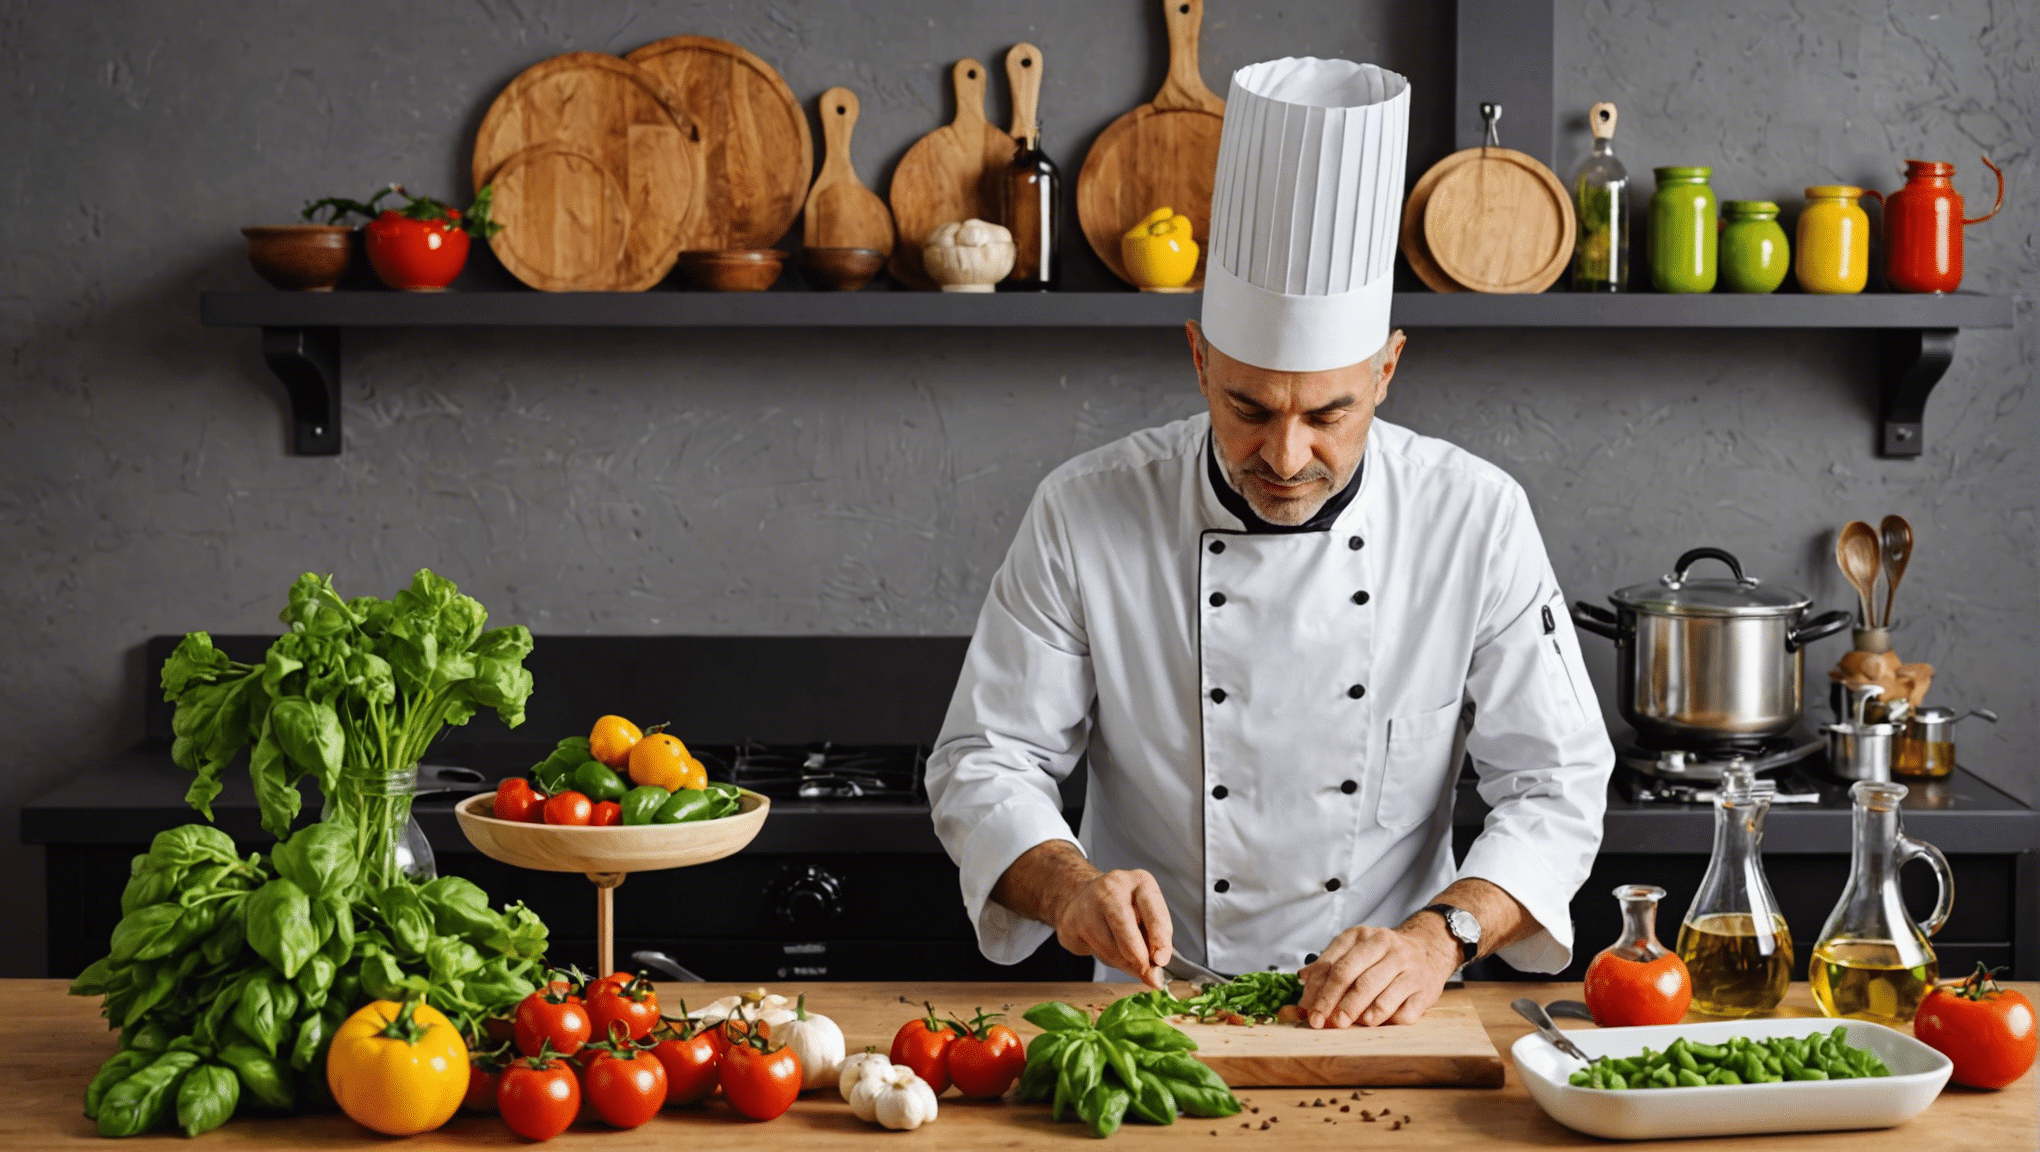 découvrez comment maîtriser la cuisine italienne facilement avec nos astuces et recettes simples. apprenez à cuisiner les plats emblématiques de l'italie et régalez-vous en toute simplicité.